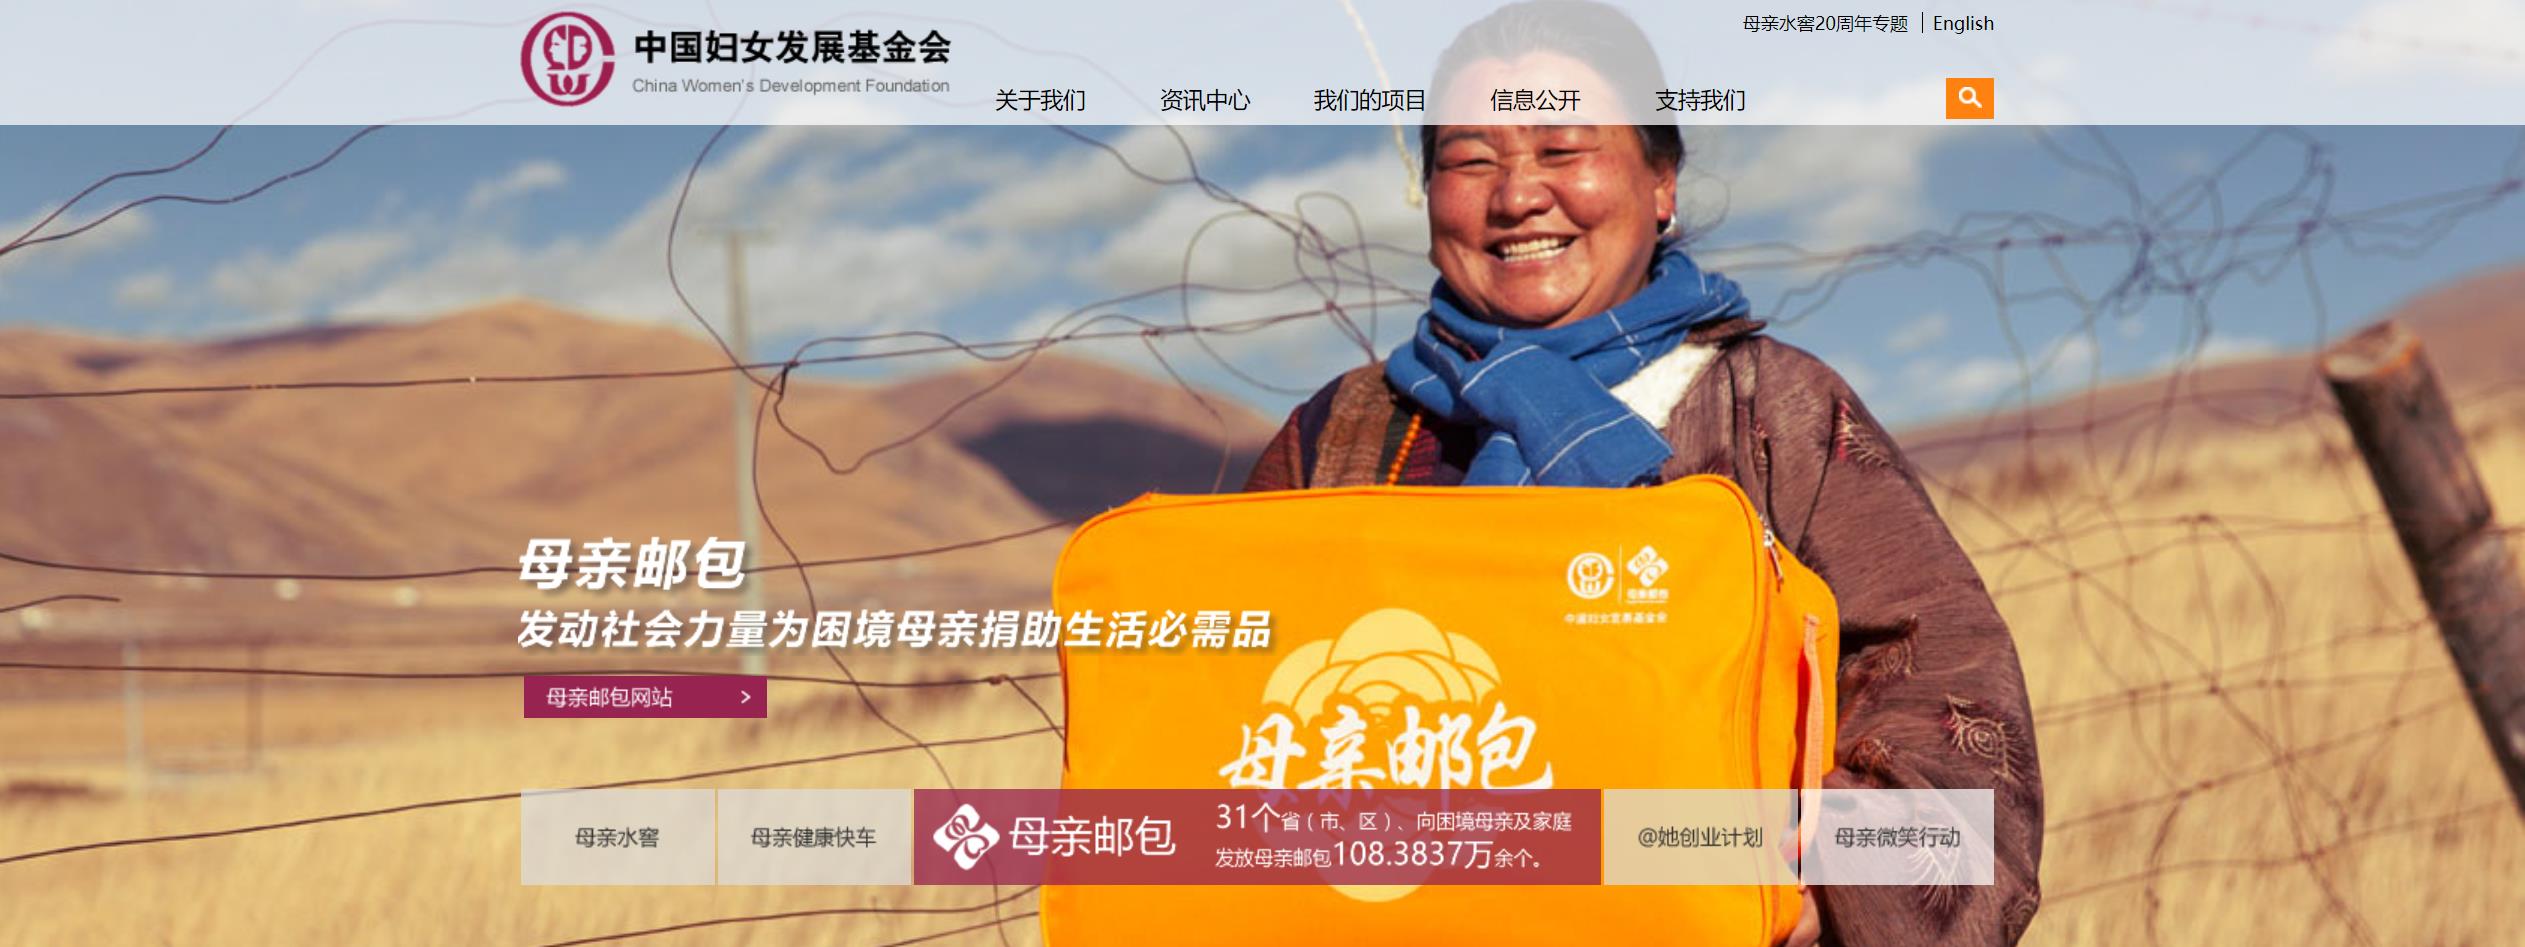 中国妇女发展基金会官网